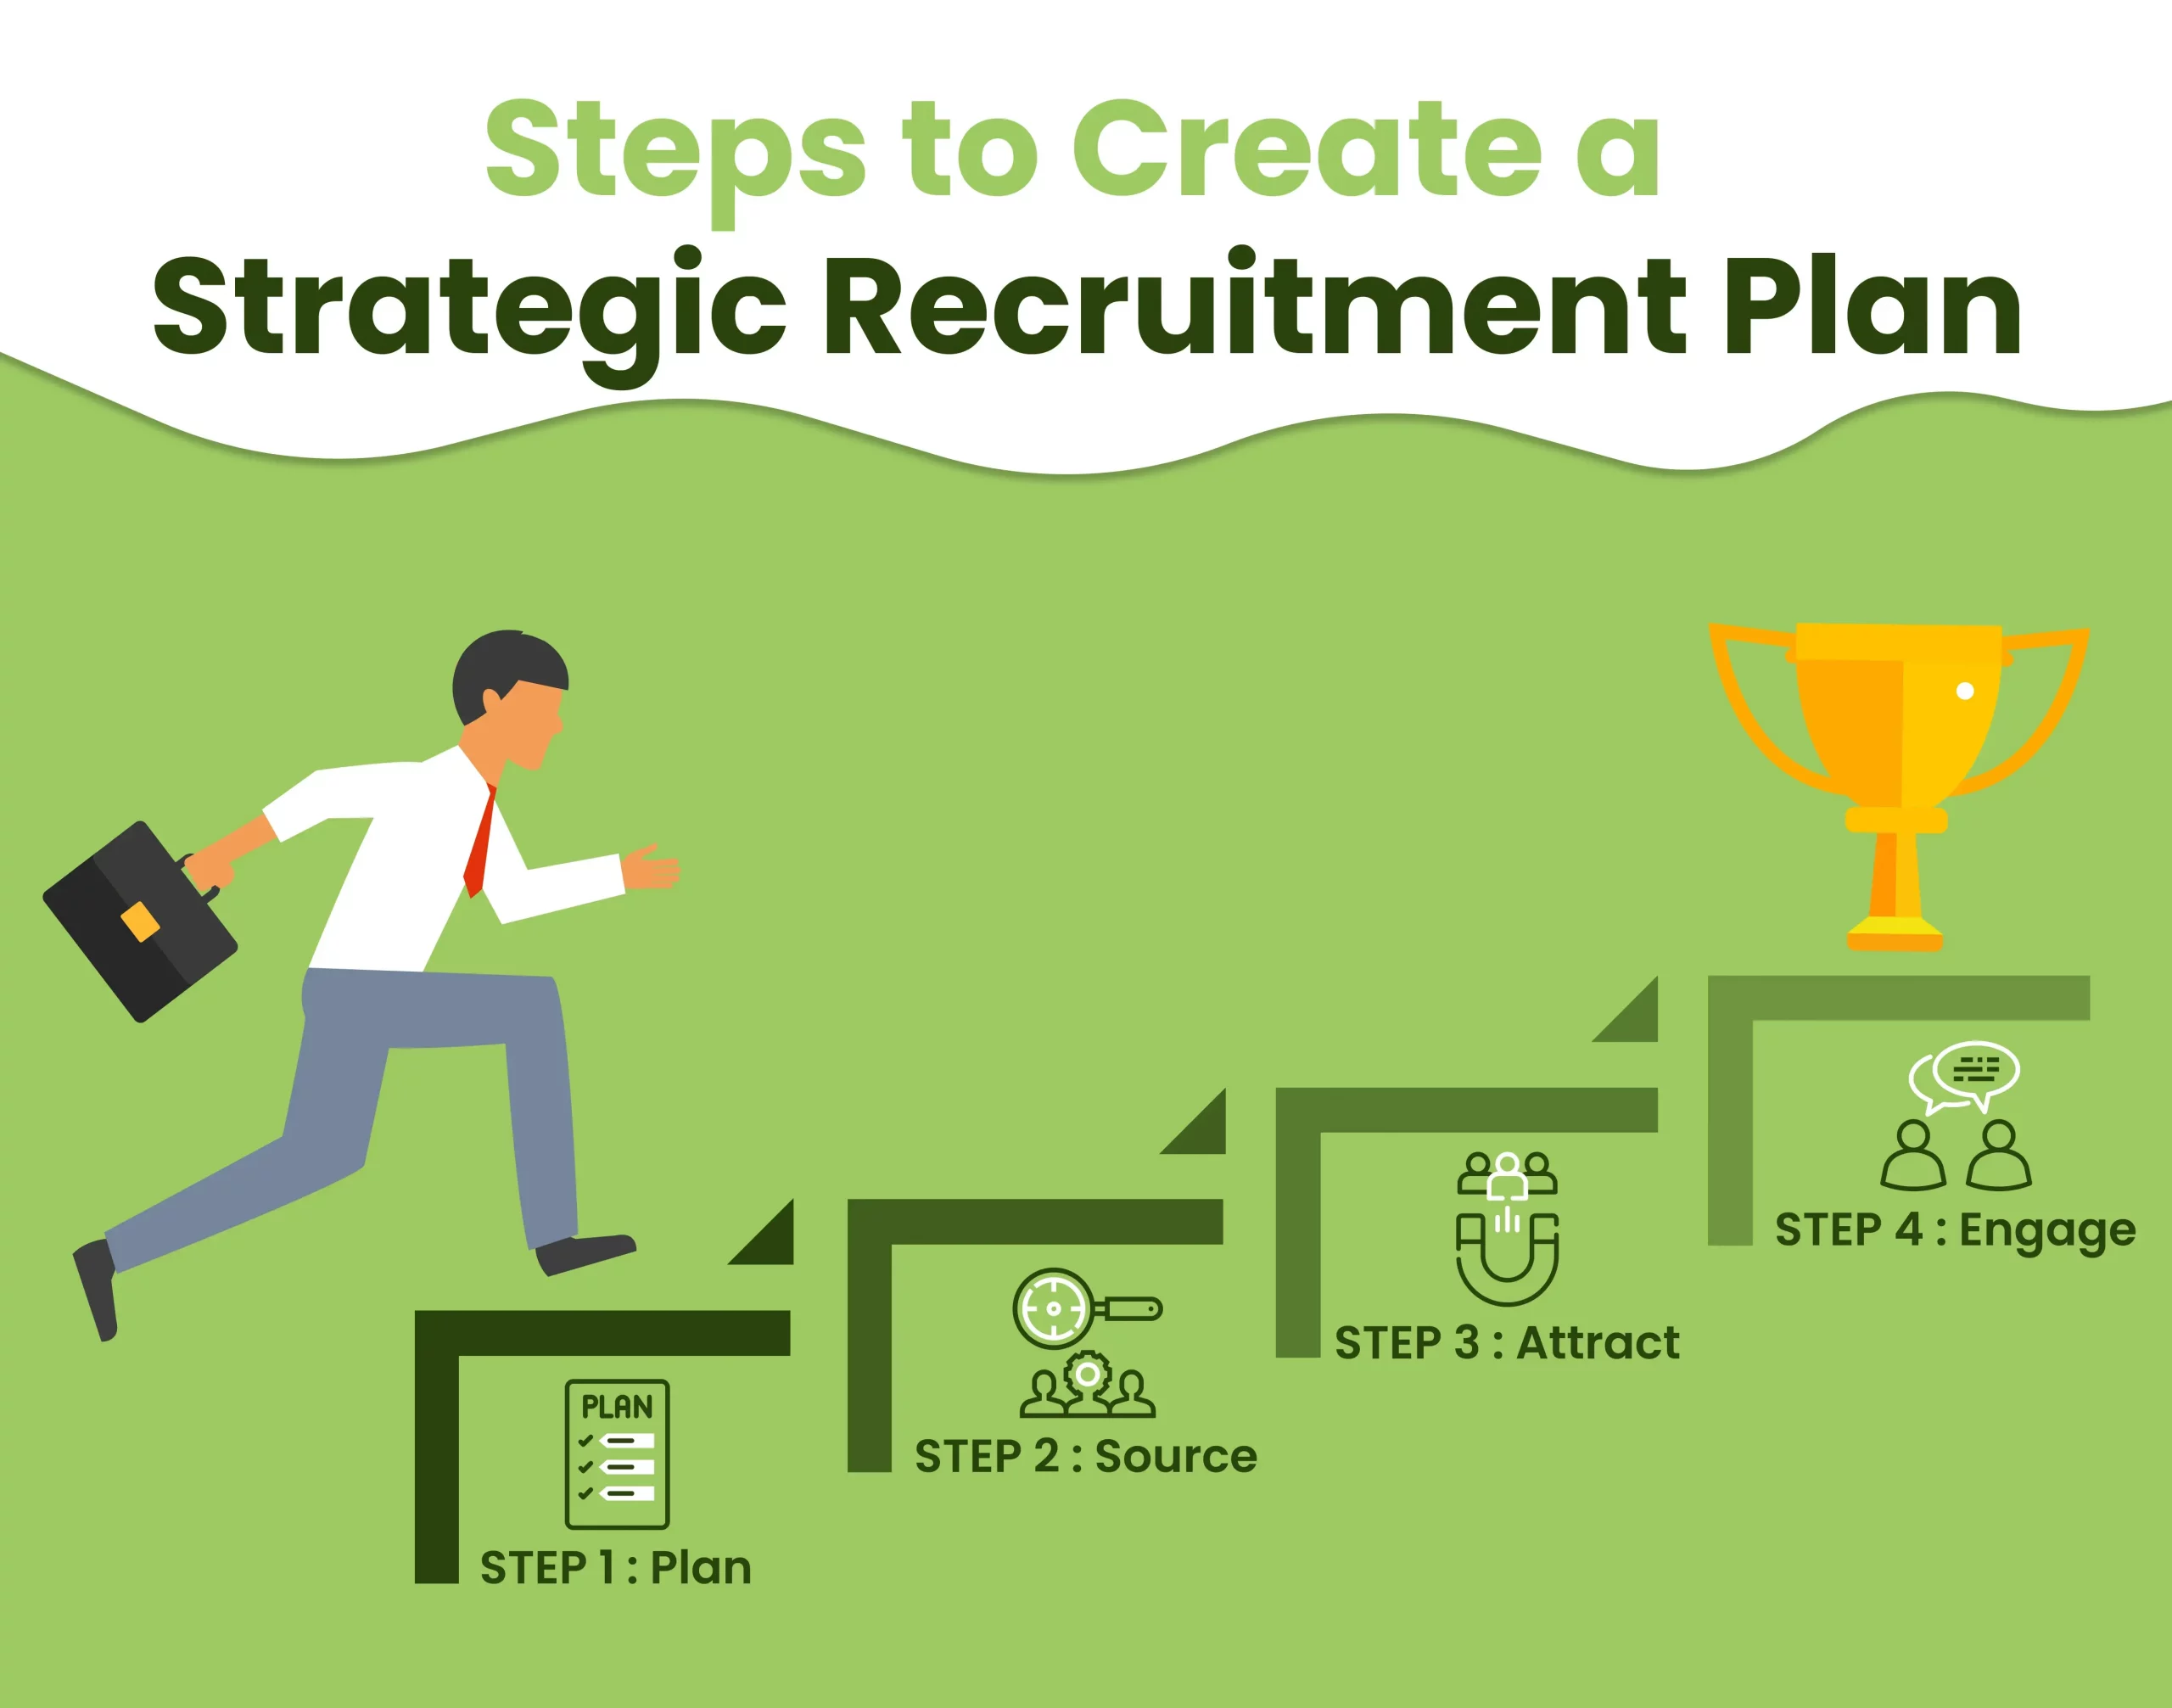 Steps for strategic recruitment plan